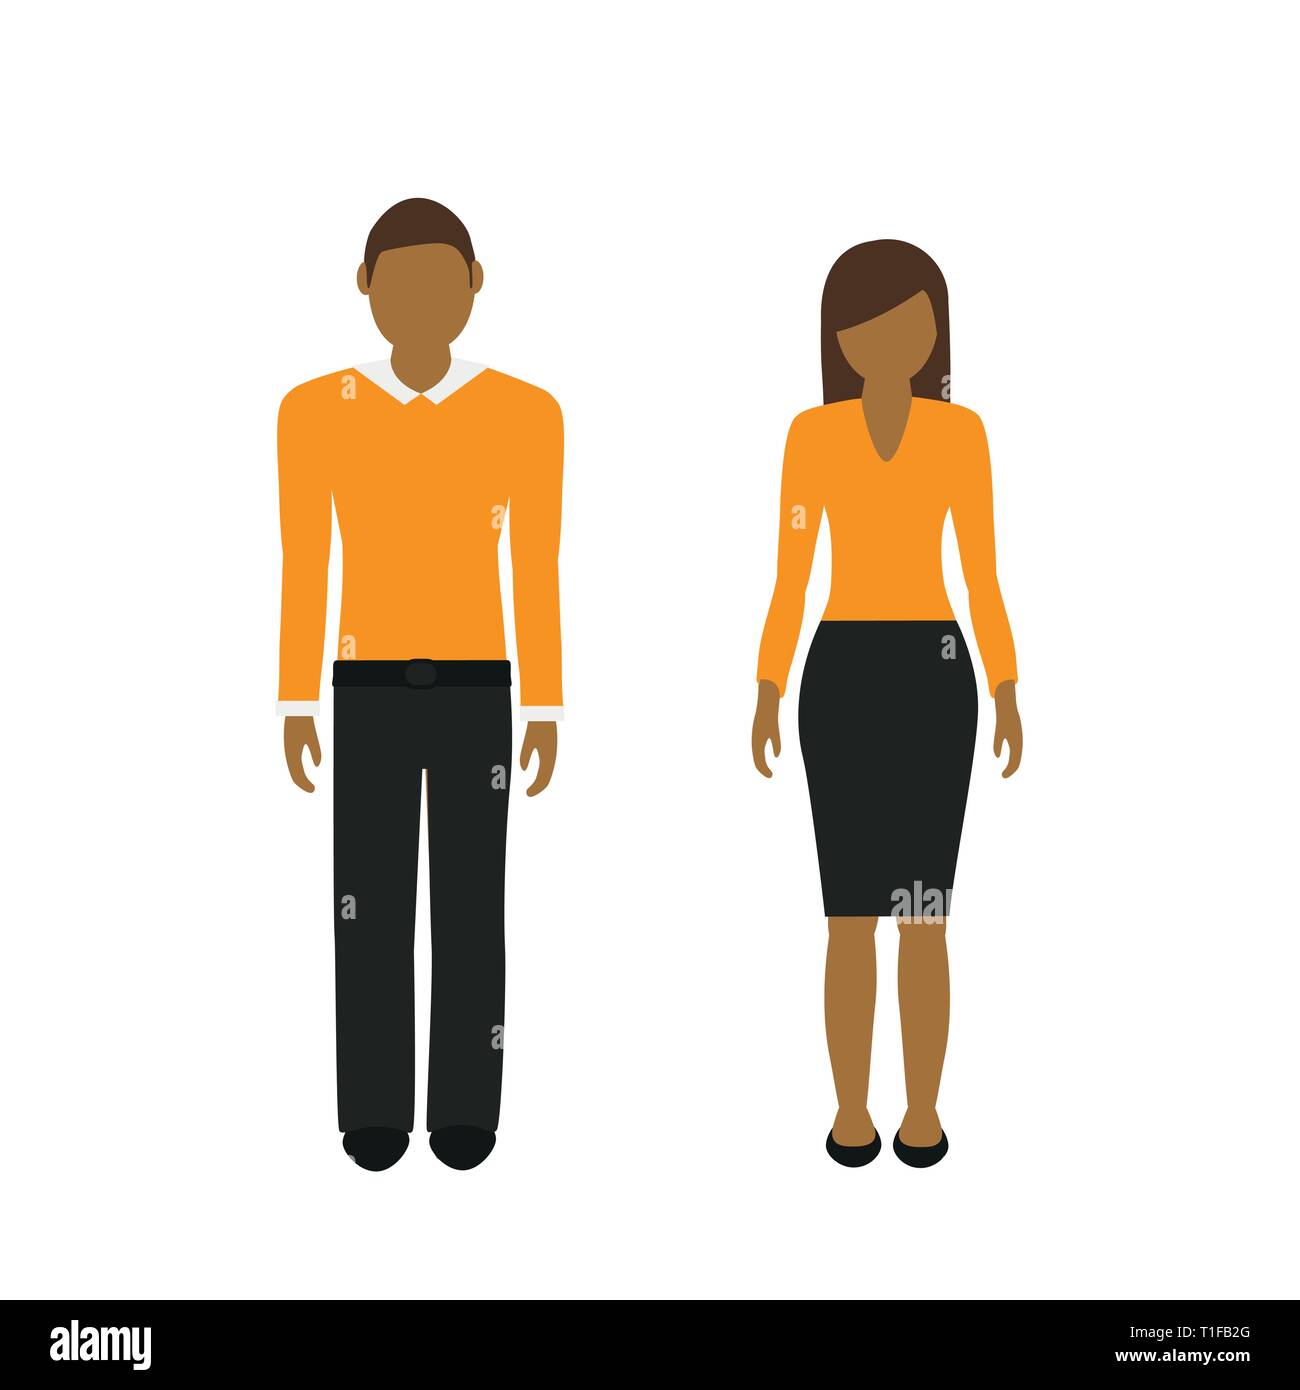 L'homme et la femme asiatique avec les cheveux bruns caractère isolé sur fond blanc vector illustration EPS10 Illustration de Vecteur